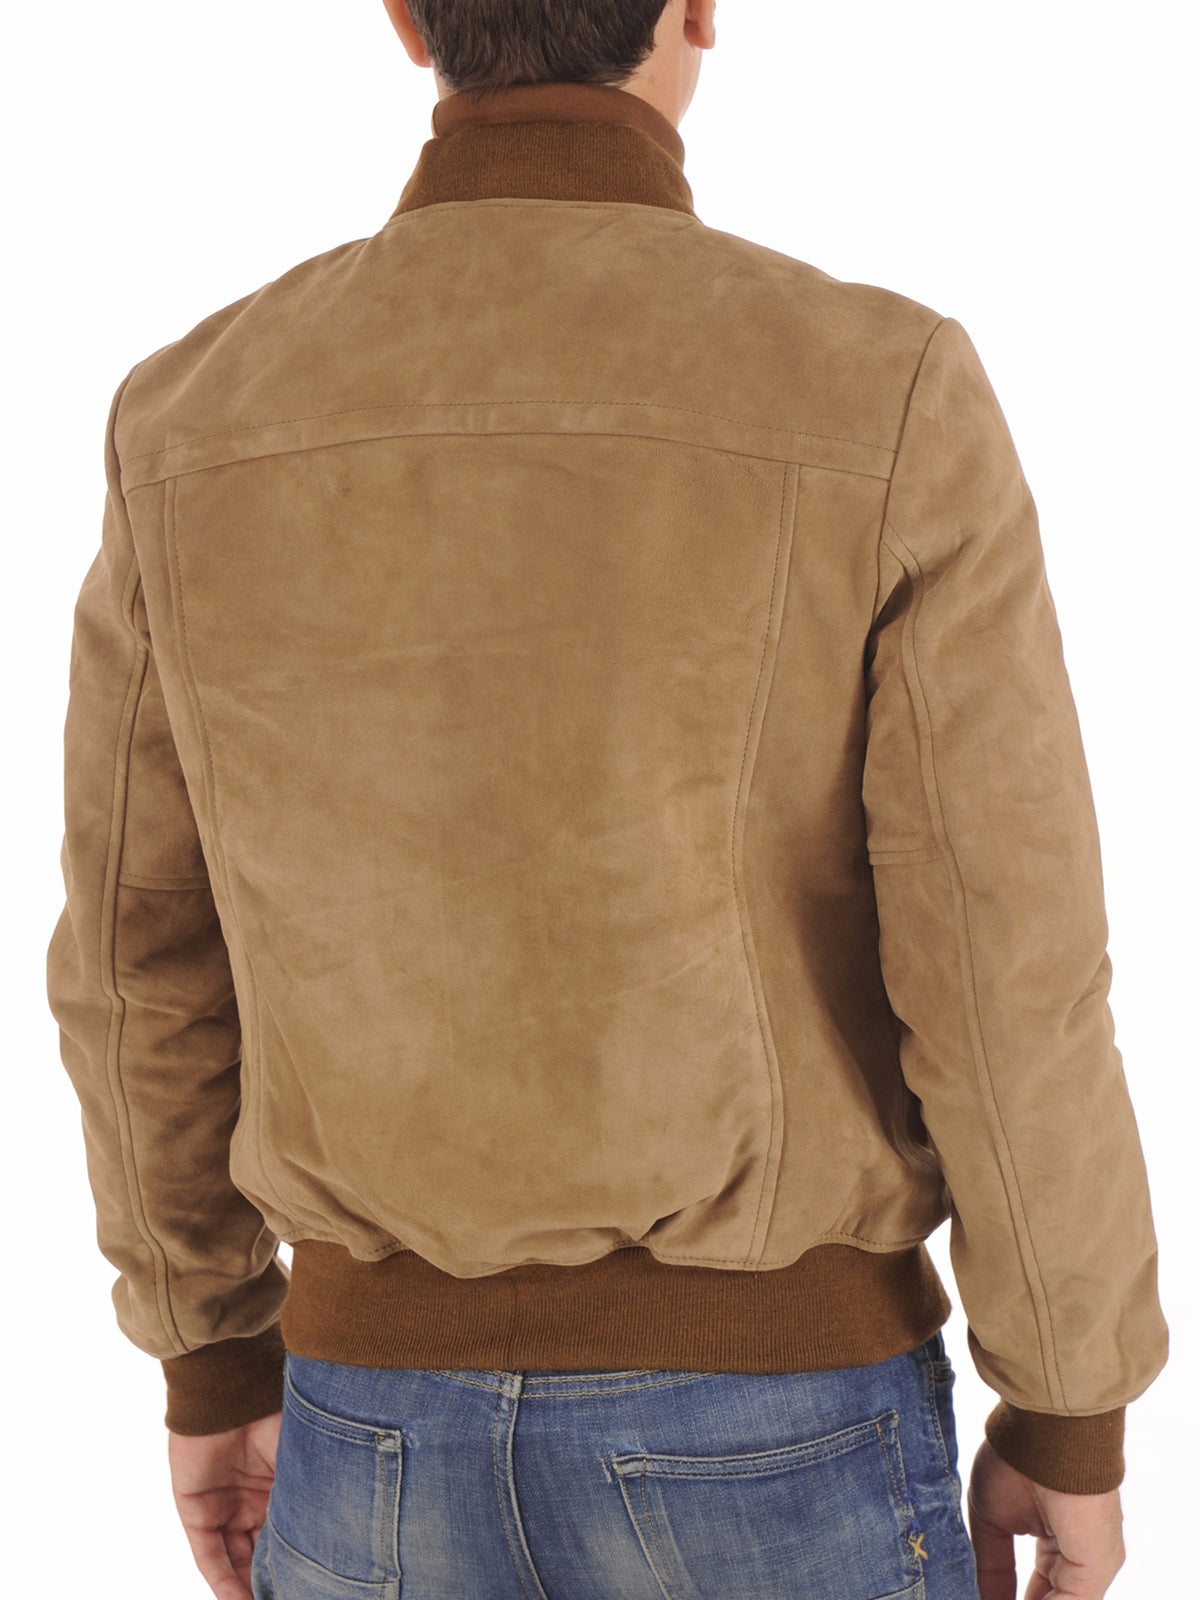 Dark Beige Goatskin Suede Leather Jacket